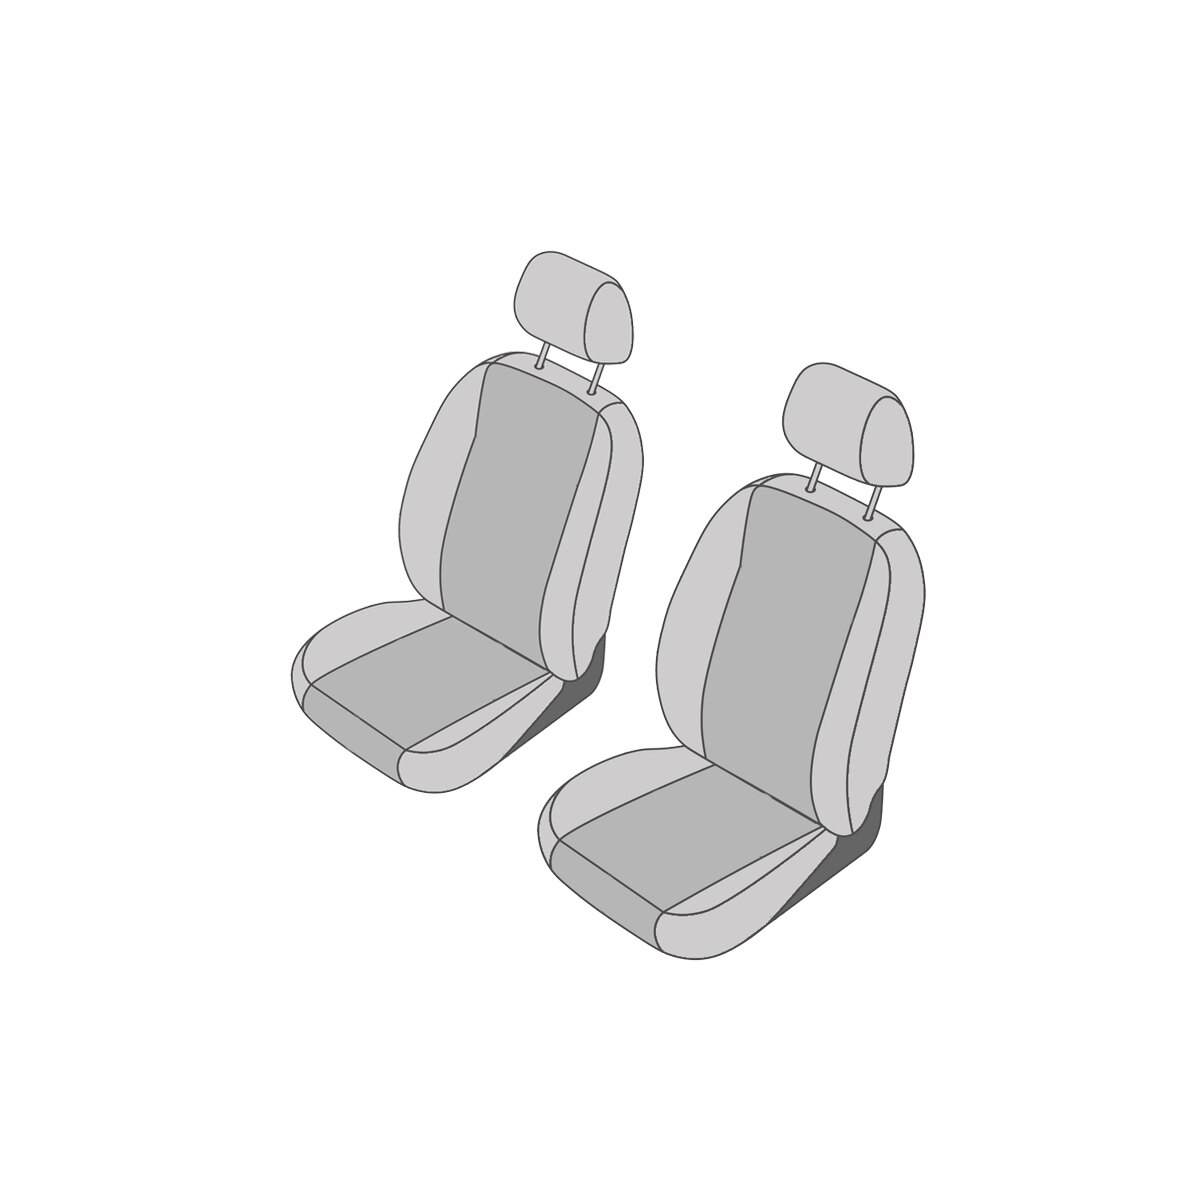 Universal Sitzbezüge Auto für Suzuki Grand Vitara I, II (1997-2014) -  Vordersitze Autositzbezüge Schonbezüge - 2XL-RD rot